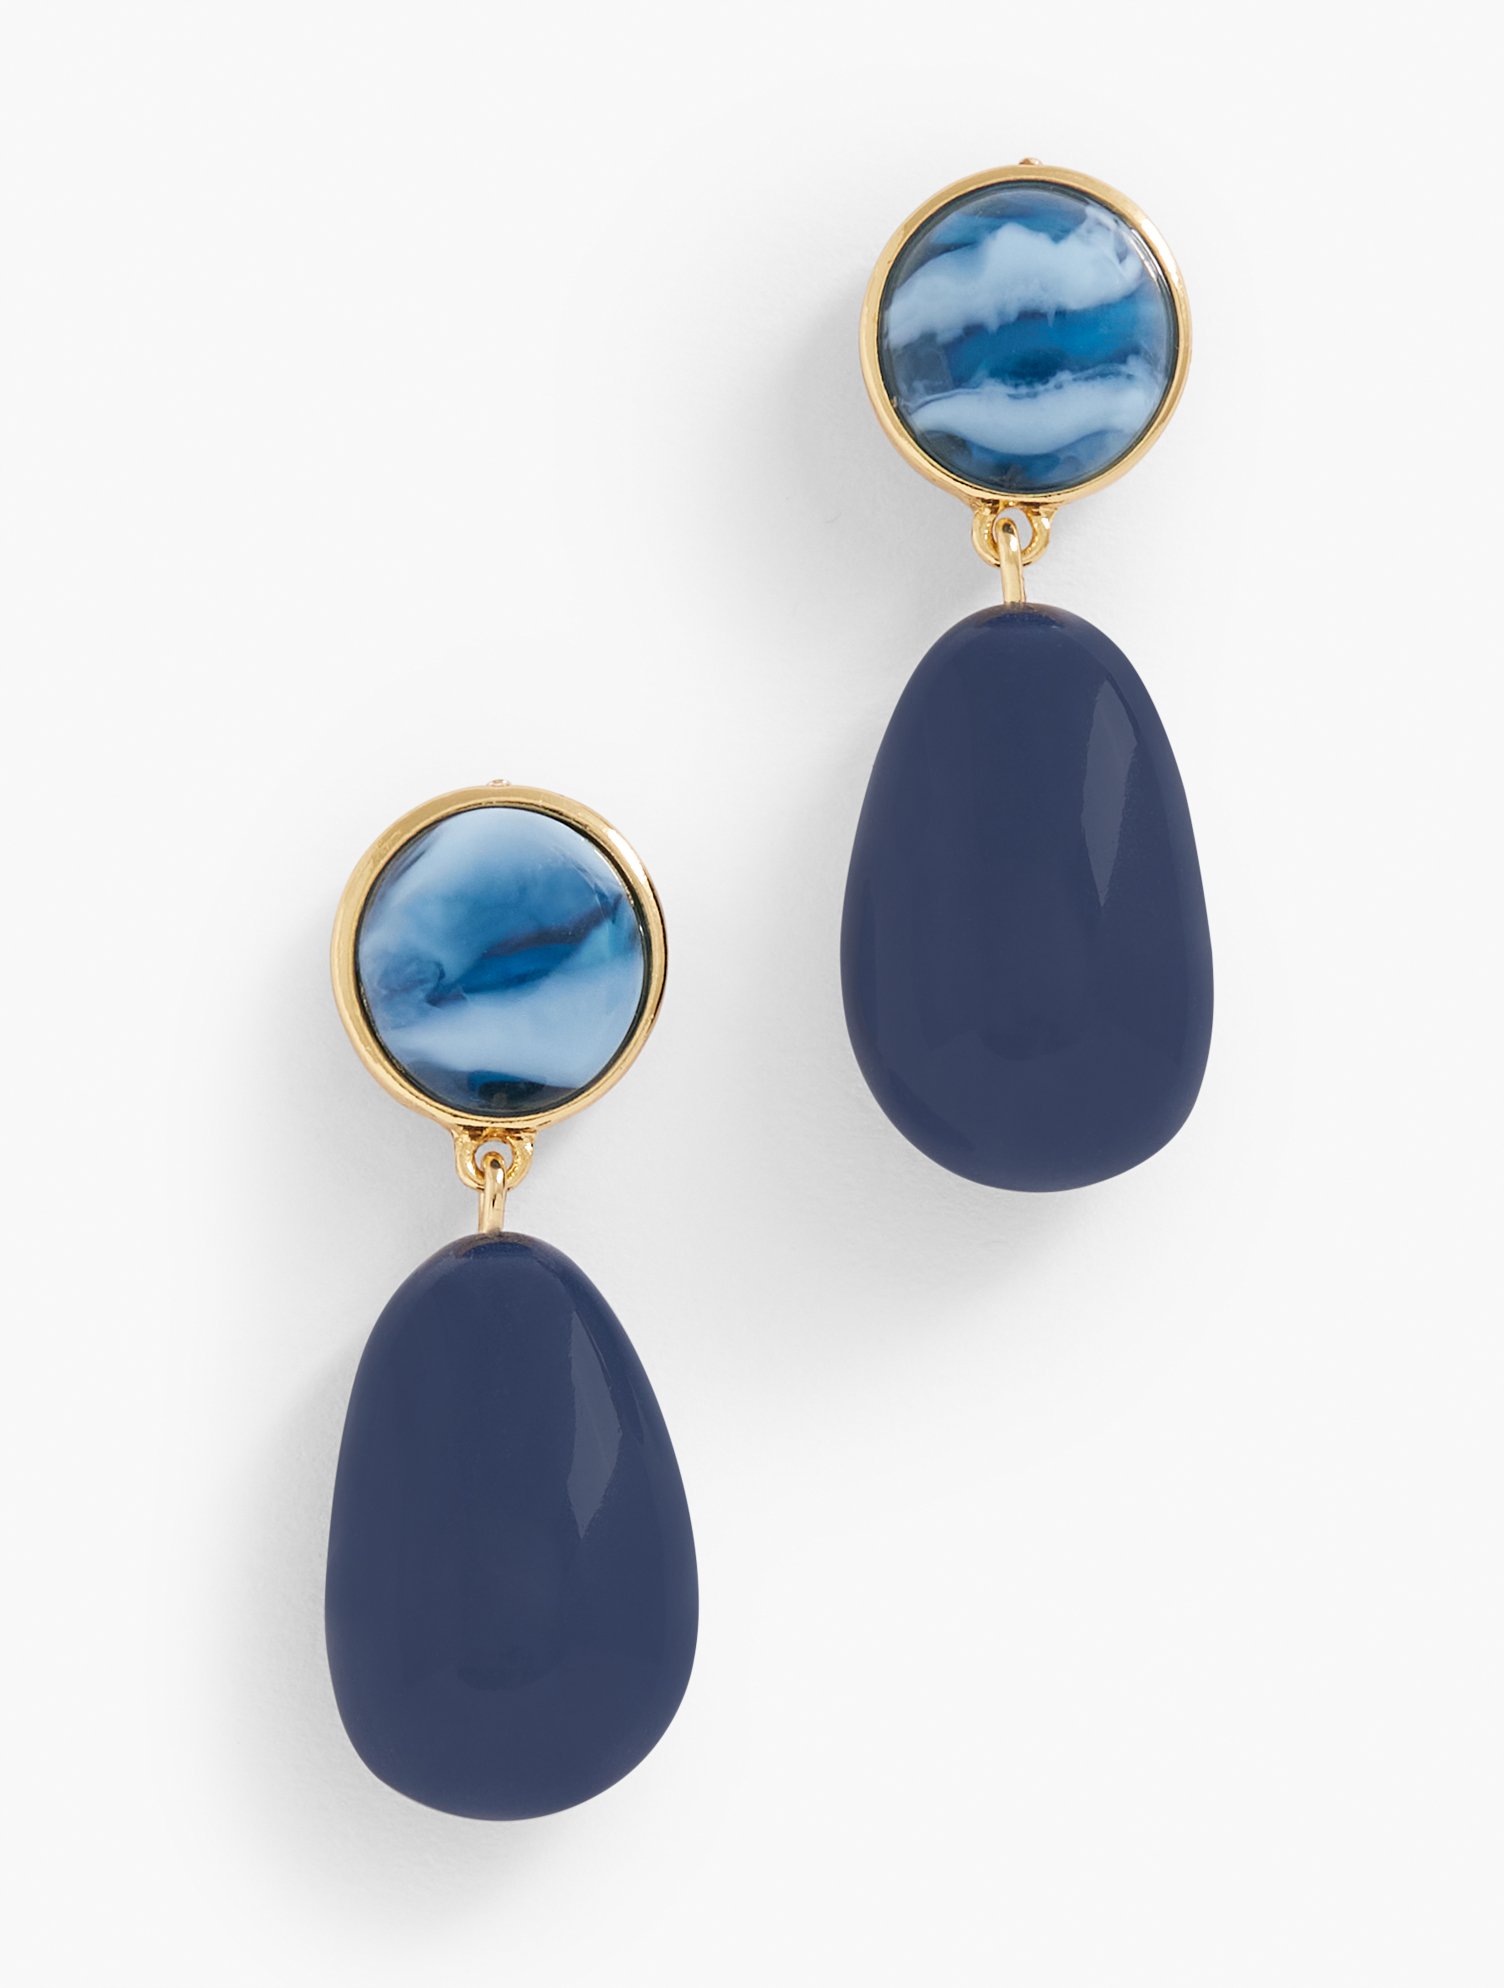 Talbots Refined Drop Earrings - Capri Blue/gold - 001  In Capri Blue,gold